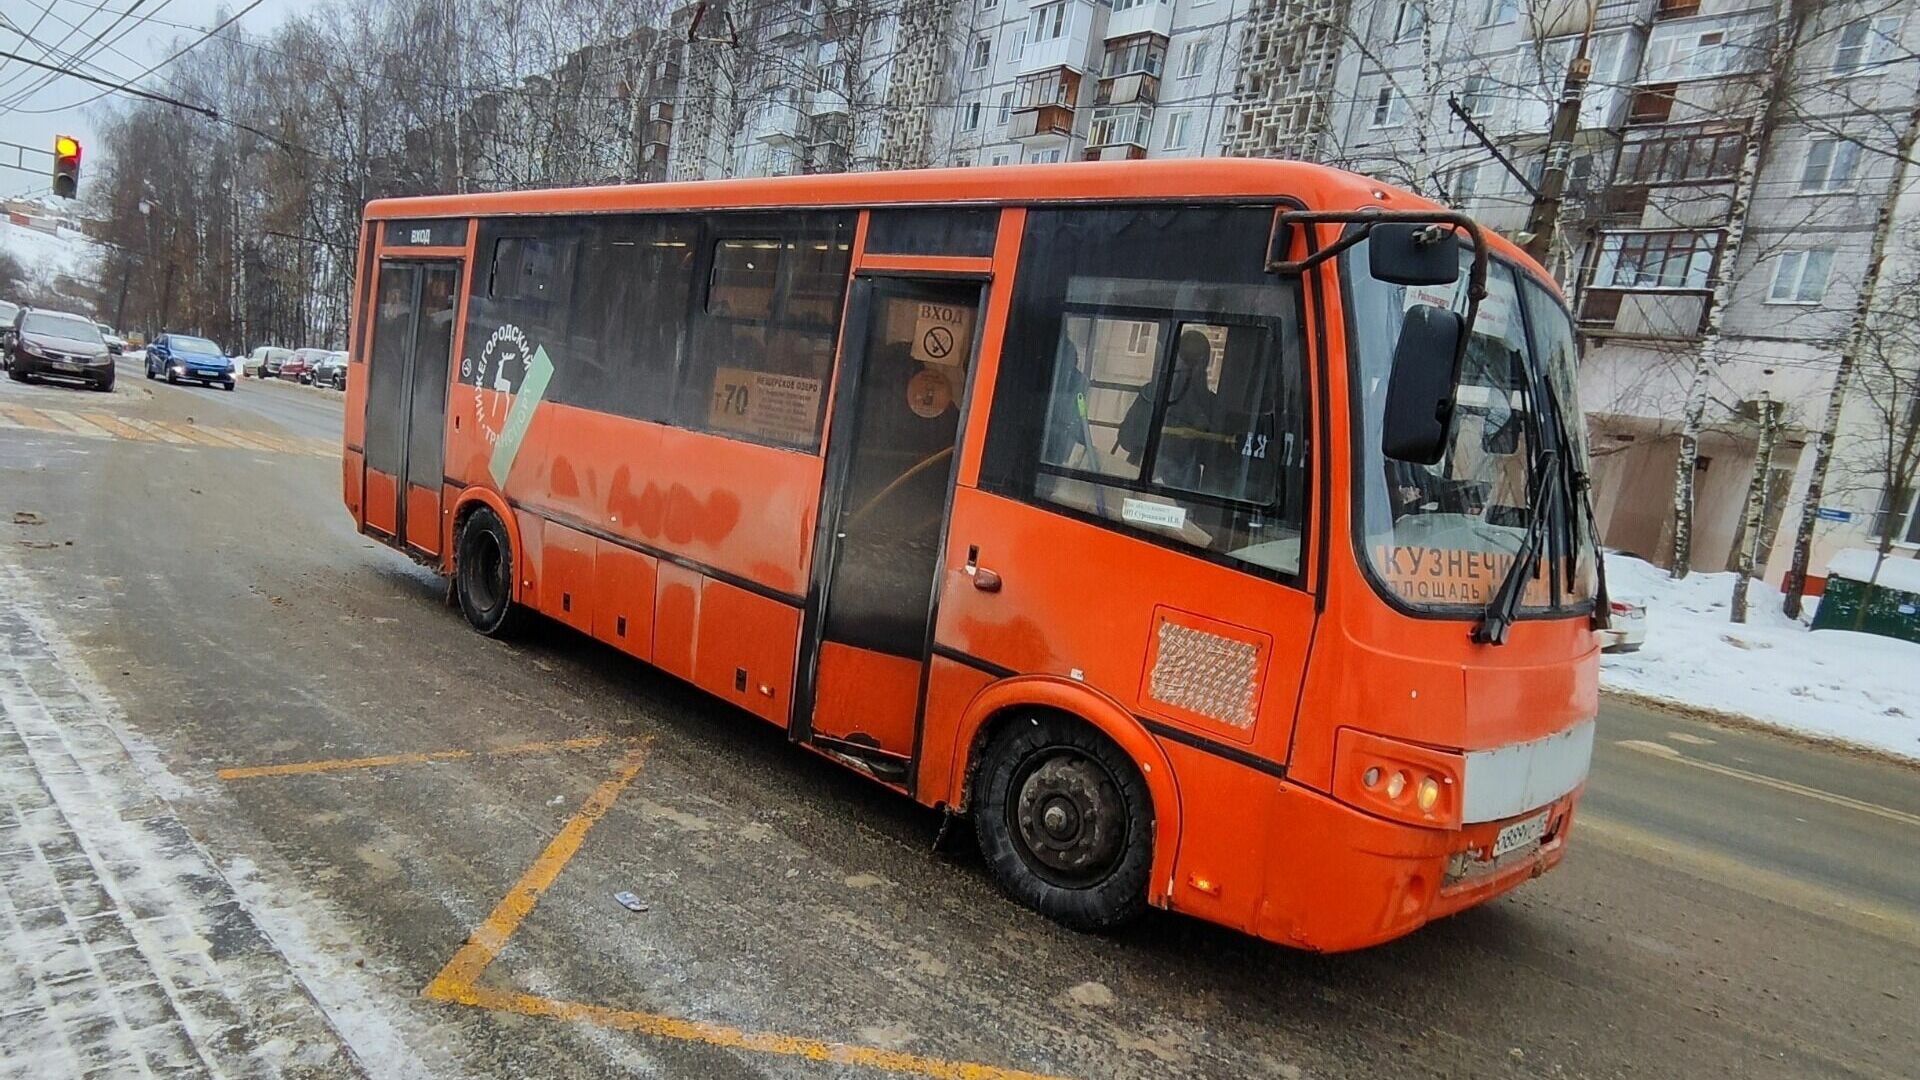 Расписание автобусов опубликуют в Нижнем Новгороде в апреле